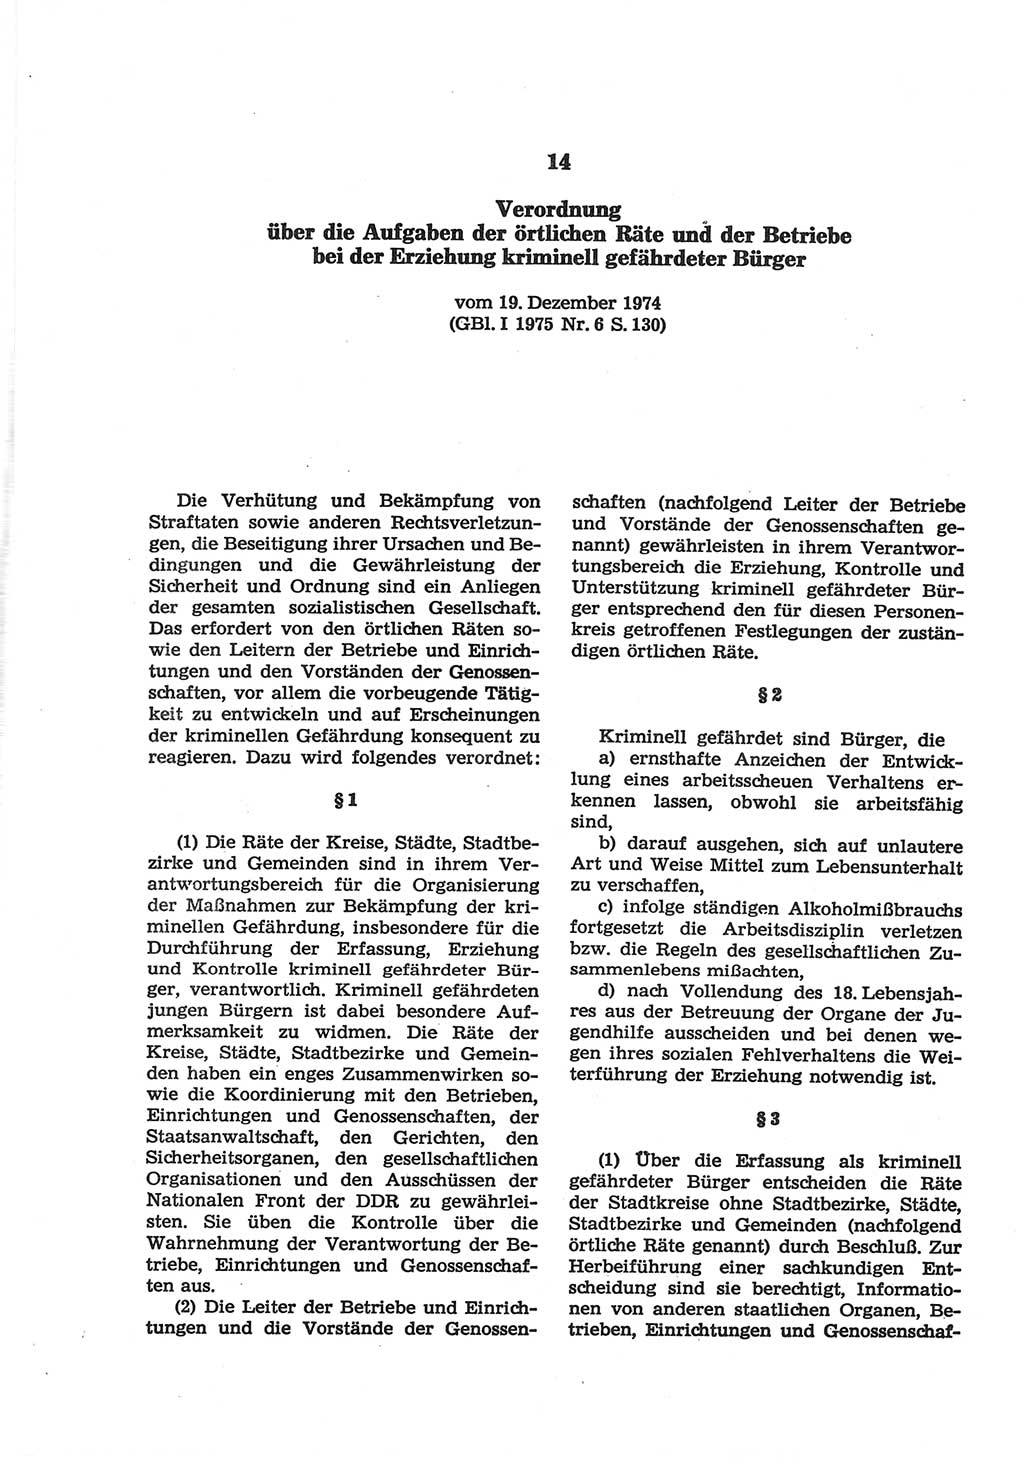 Strafgesetzbuch (StGB) der Deutschen Demokratischen Republik (DDR) und angrenzende Gesetze und Bestimmungen 1977, Seite 236 (StGB DDR Ges. Best. 1977, S. 236)